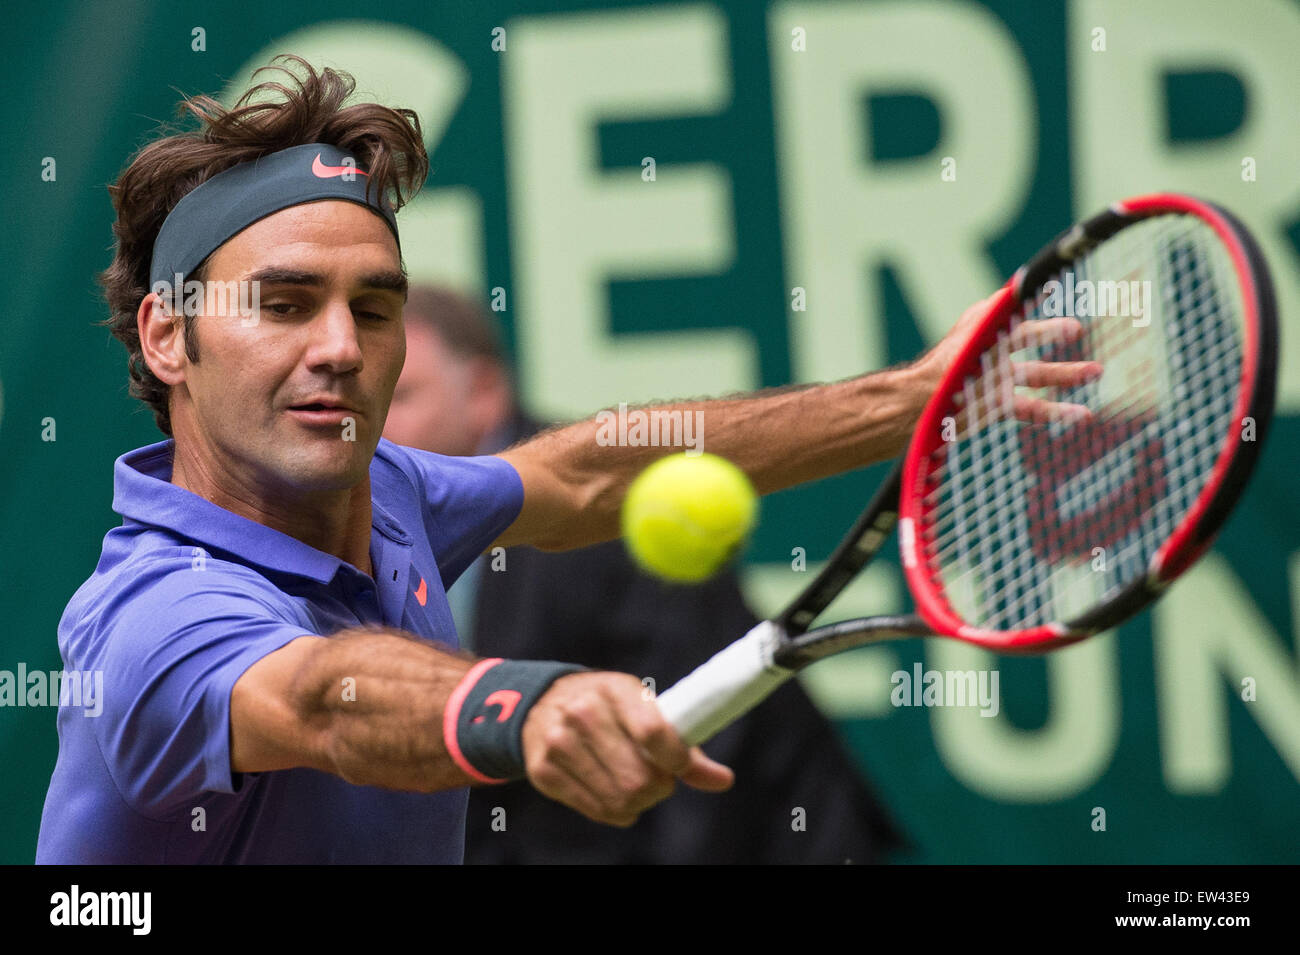 Halle, Deutschland. 17. Juni 2015. Roger Federer der Schweiz in Aktion während der Runde der 16 Match gegen Gulbis von Lettland bei den ATP-Tennisturnier in Halle, Deutschland, 17. Juni 2015. Foto: MAJA HITIJ/Dpa/Alamy Live News Stockfoto